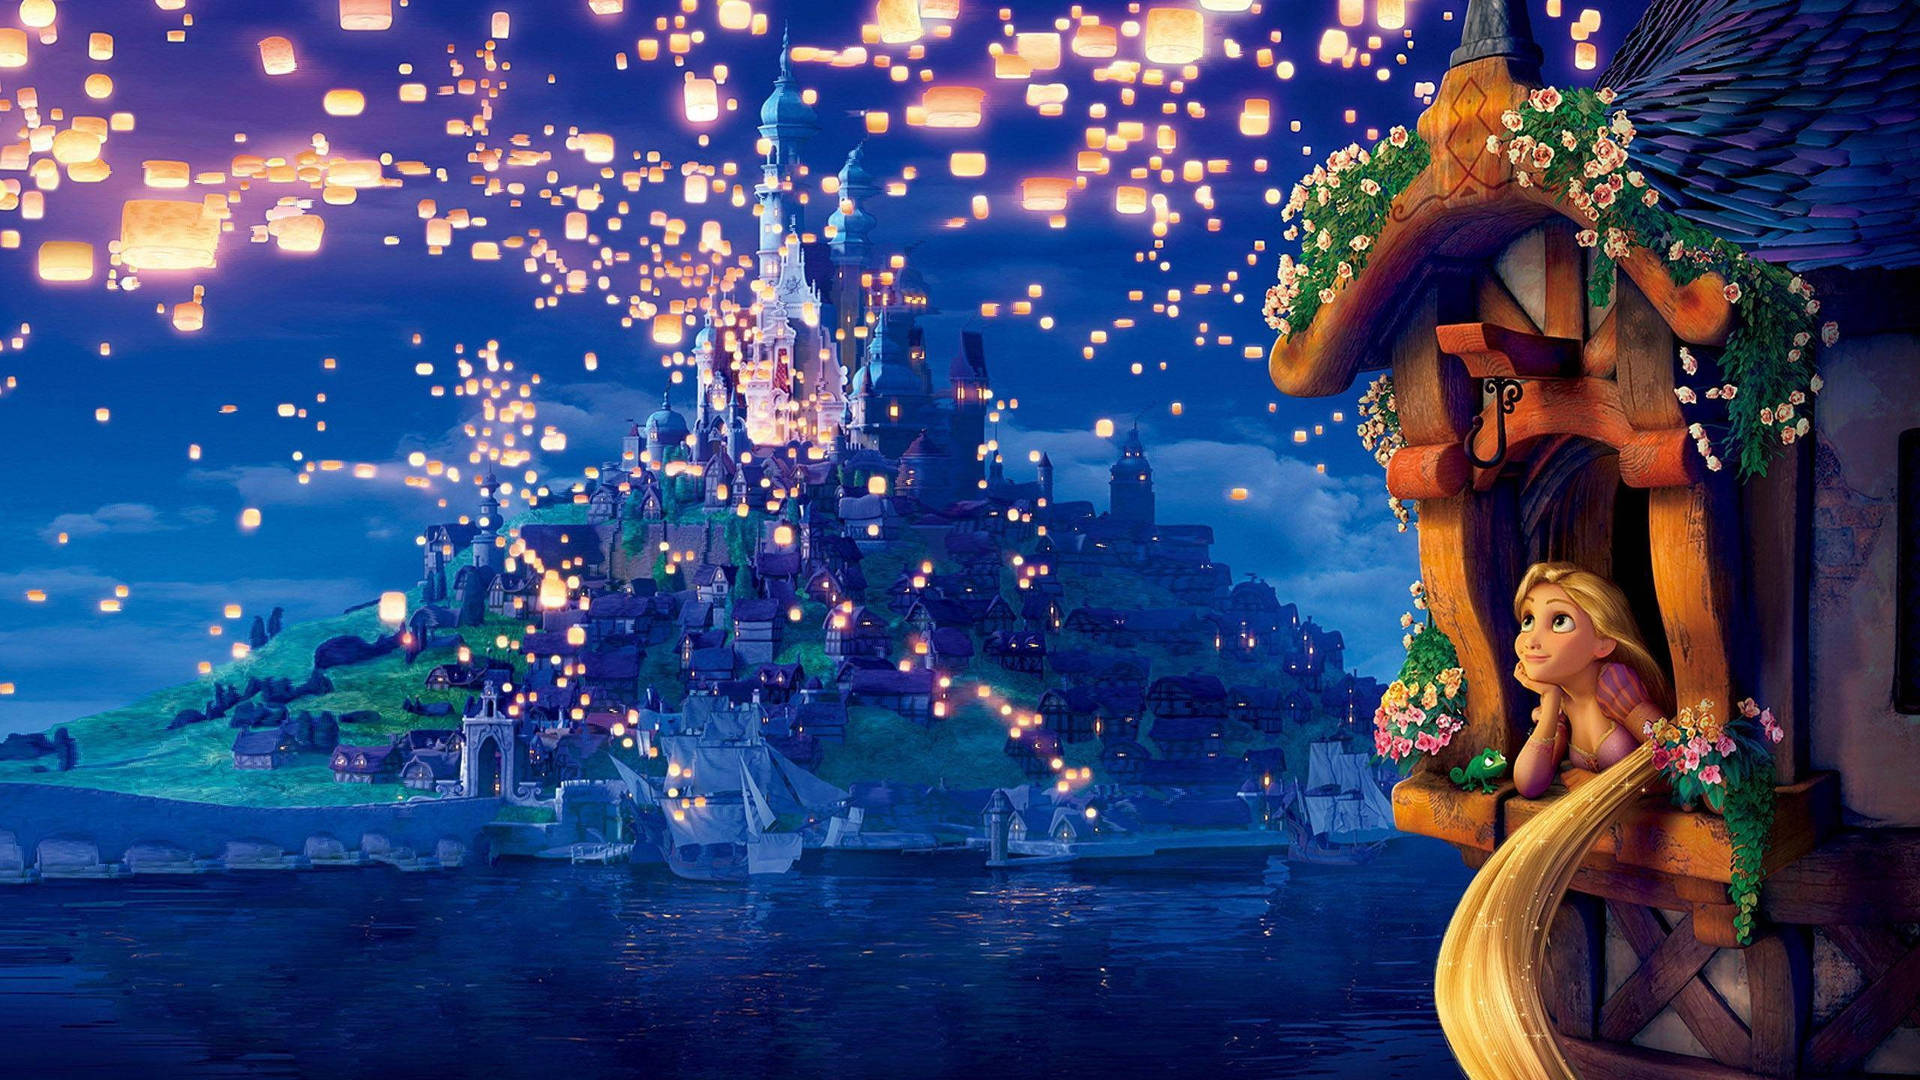 Sfondoanimato Del Film Rapunzel - L'intreccio Della Torre Con Risoluzione 2560 X 1440. Sfondo